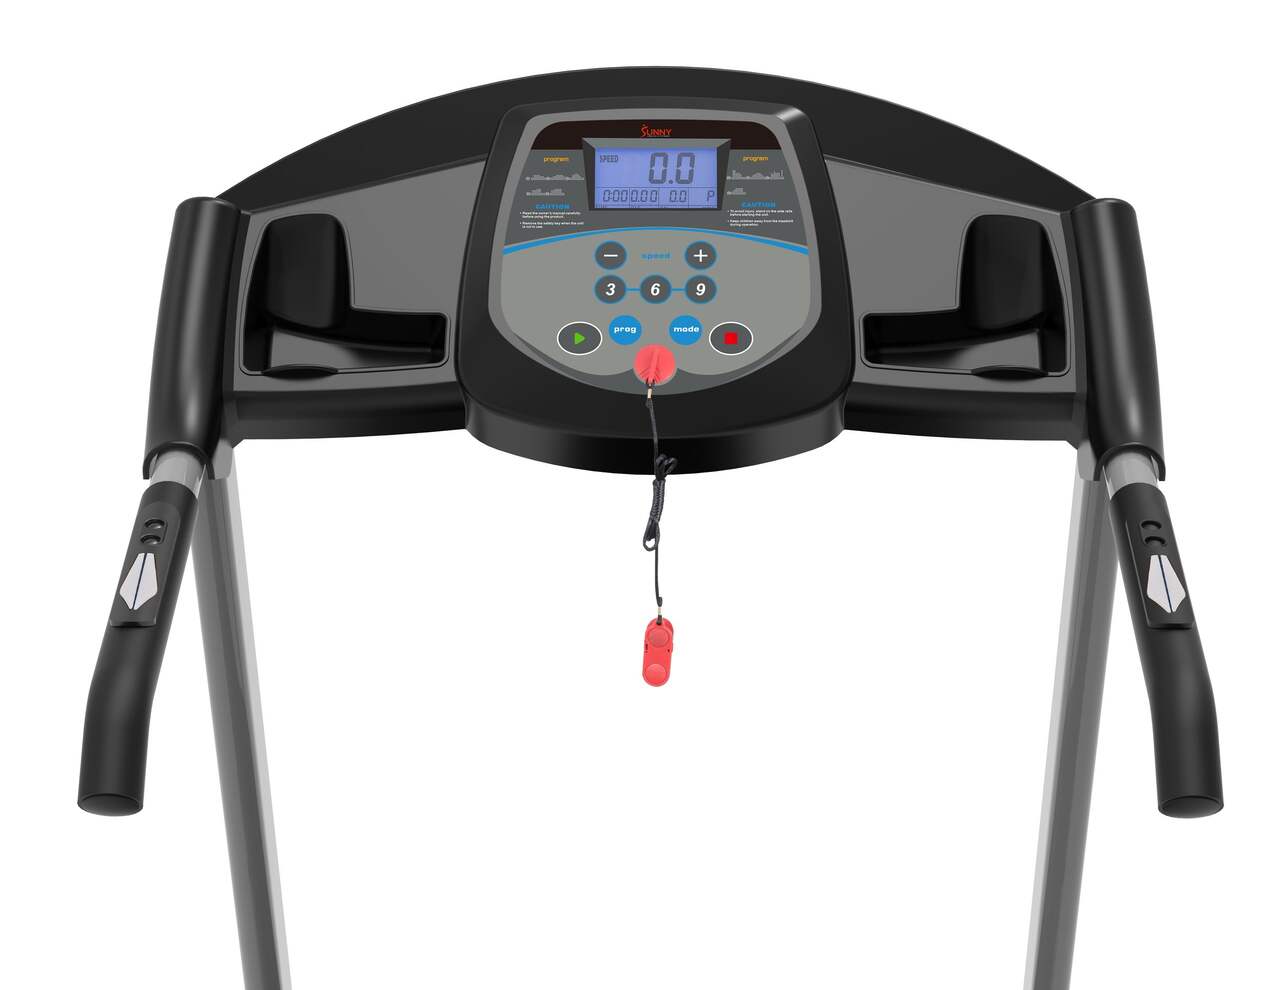 Sunny Health & Fitness TM100 Auto-Incline Folding Treadmill